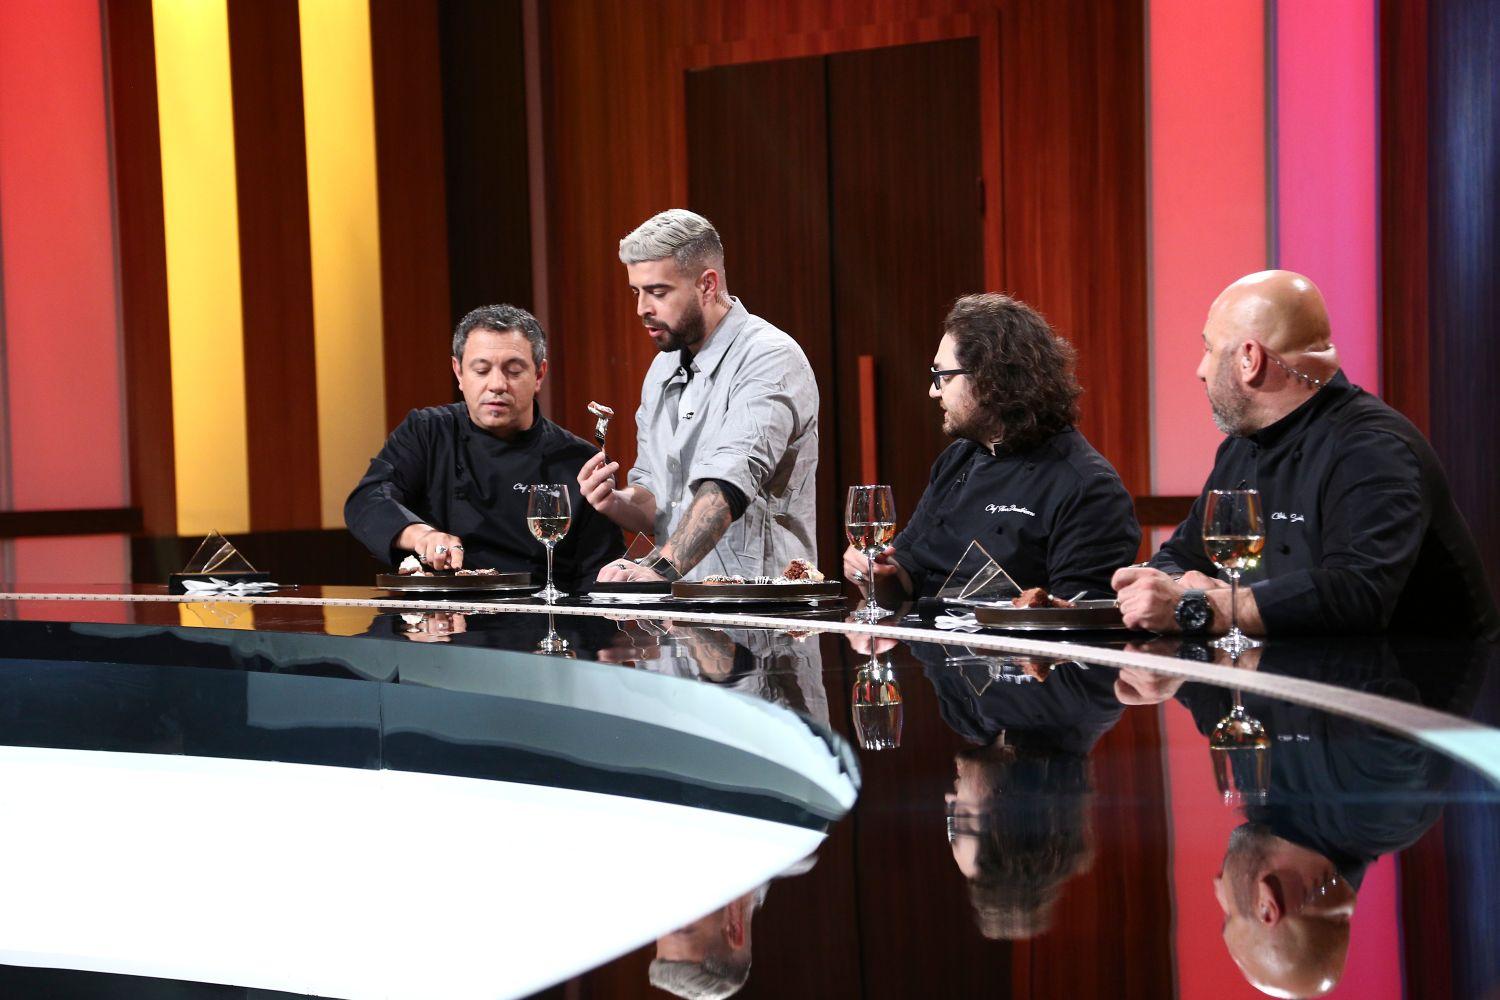 Chefii Florin Dumitrescu, Sorin Bontea și Cătălin Scărlătescu, în platoul emisiunii Chefi la cuțite, alături de Speak